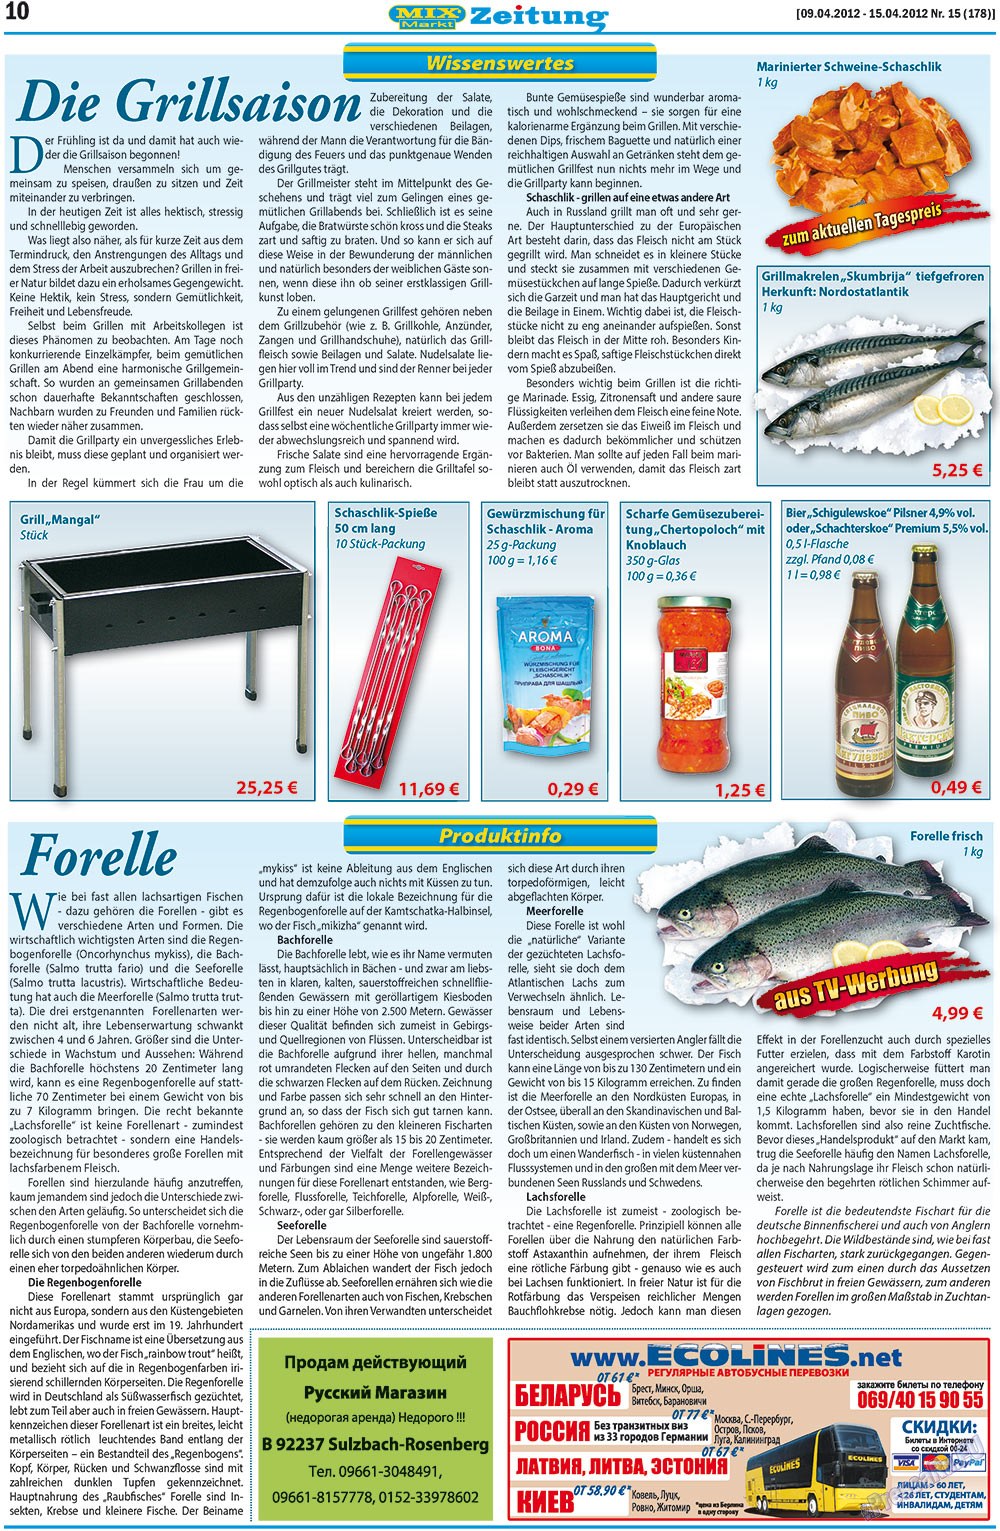 MIX-Markt Zeitung, газета. 2012 №15 стр.10